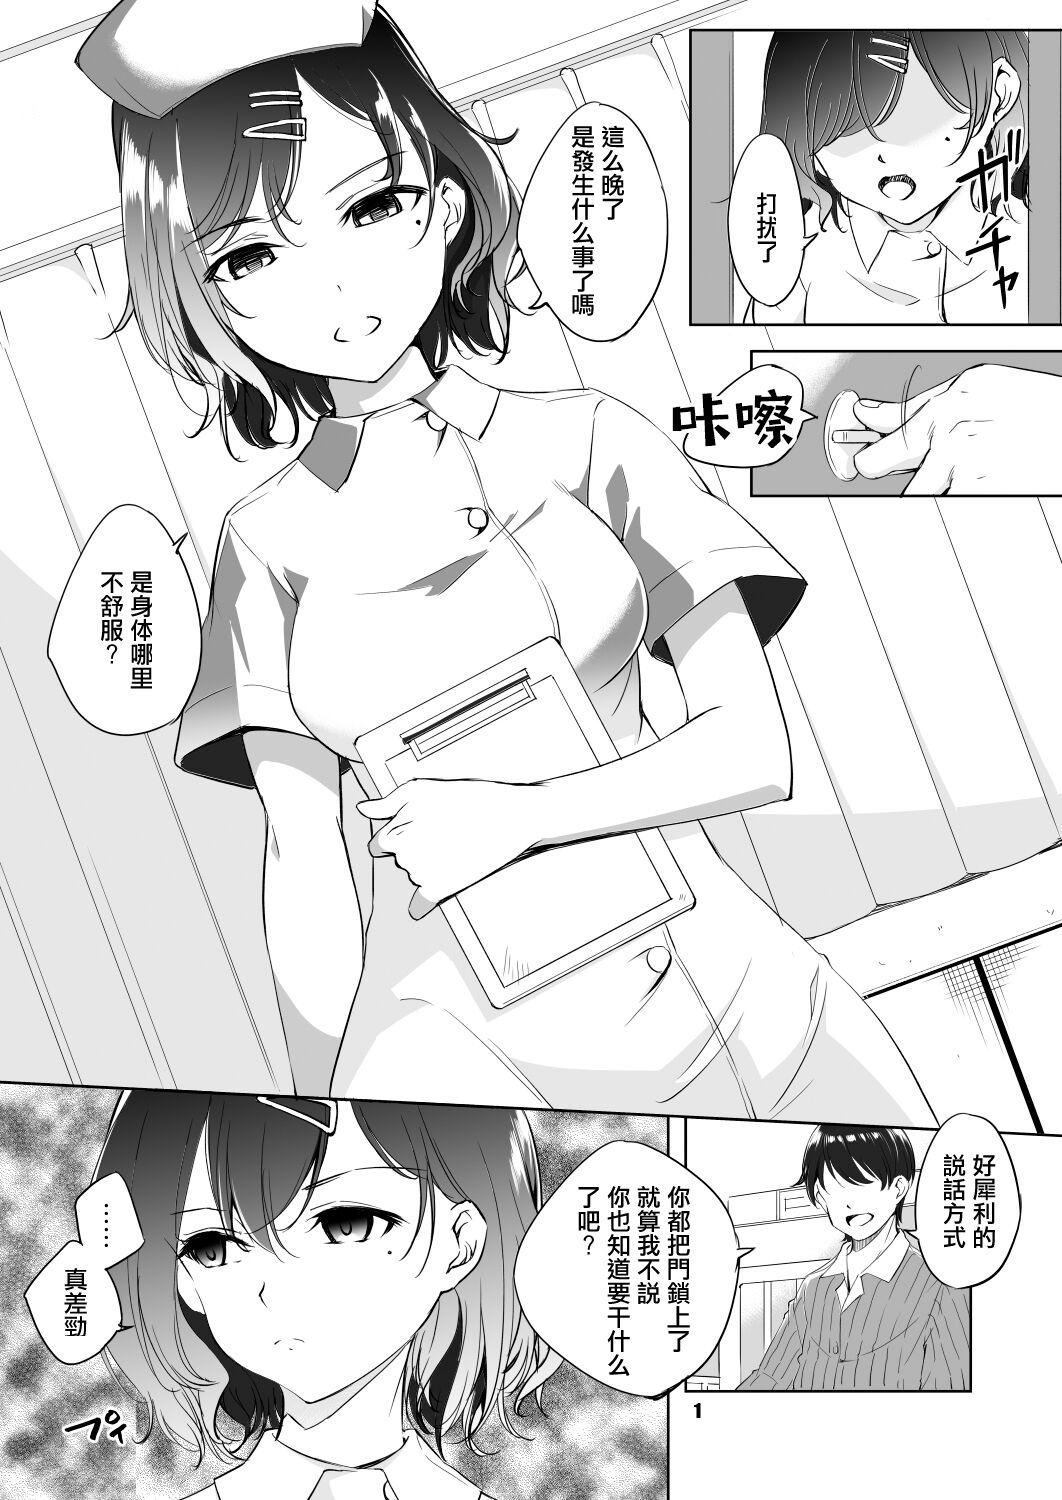 Higuchi Madoka Nurse Cosplay Manga 0